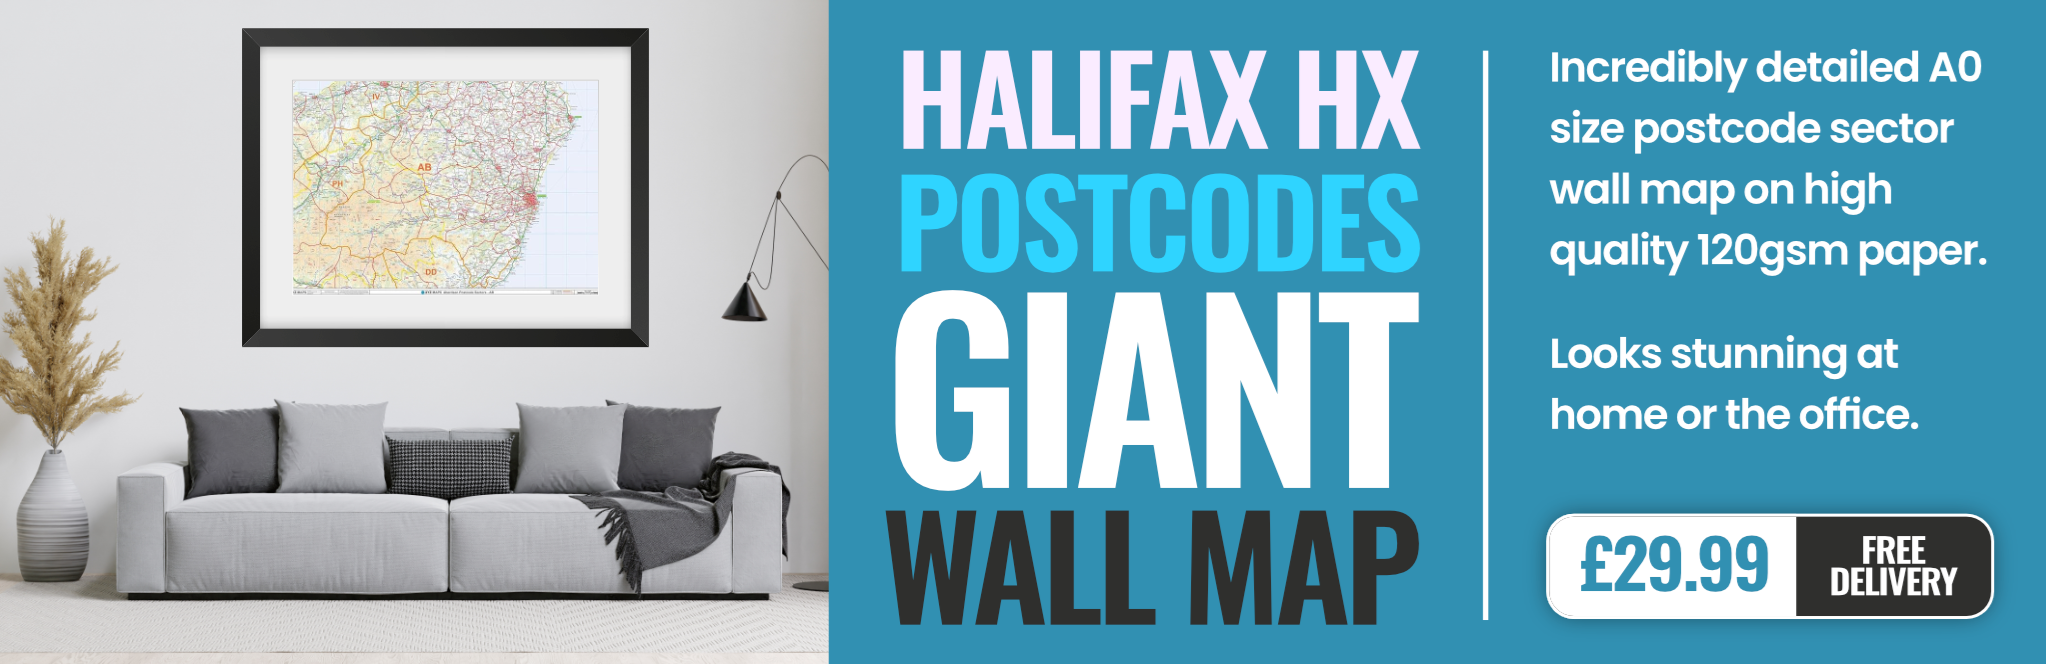 HX Postcode Wall Map